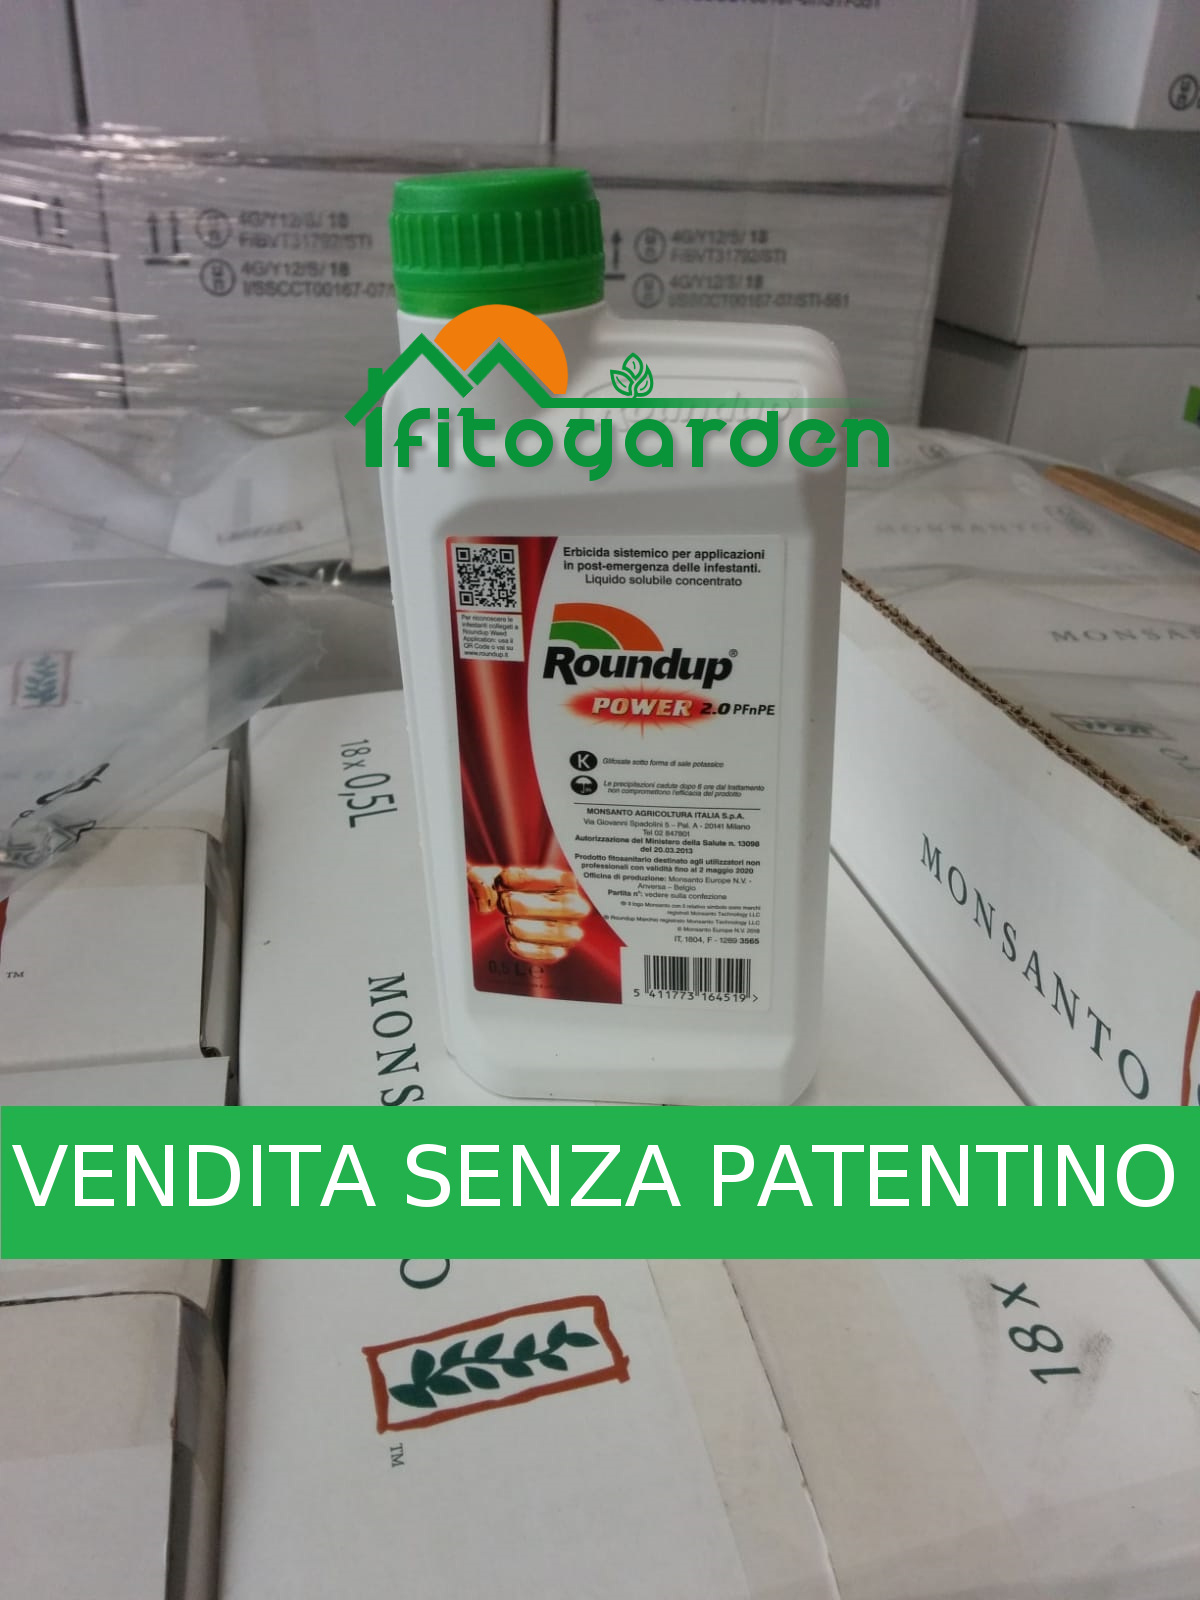 Roundup POWER 2.0 - VENDITA SENZA PATENTINO - Fitogarden